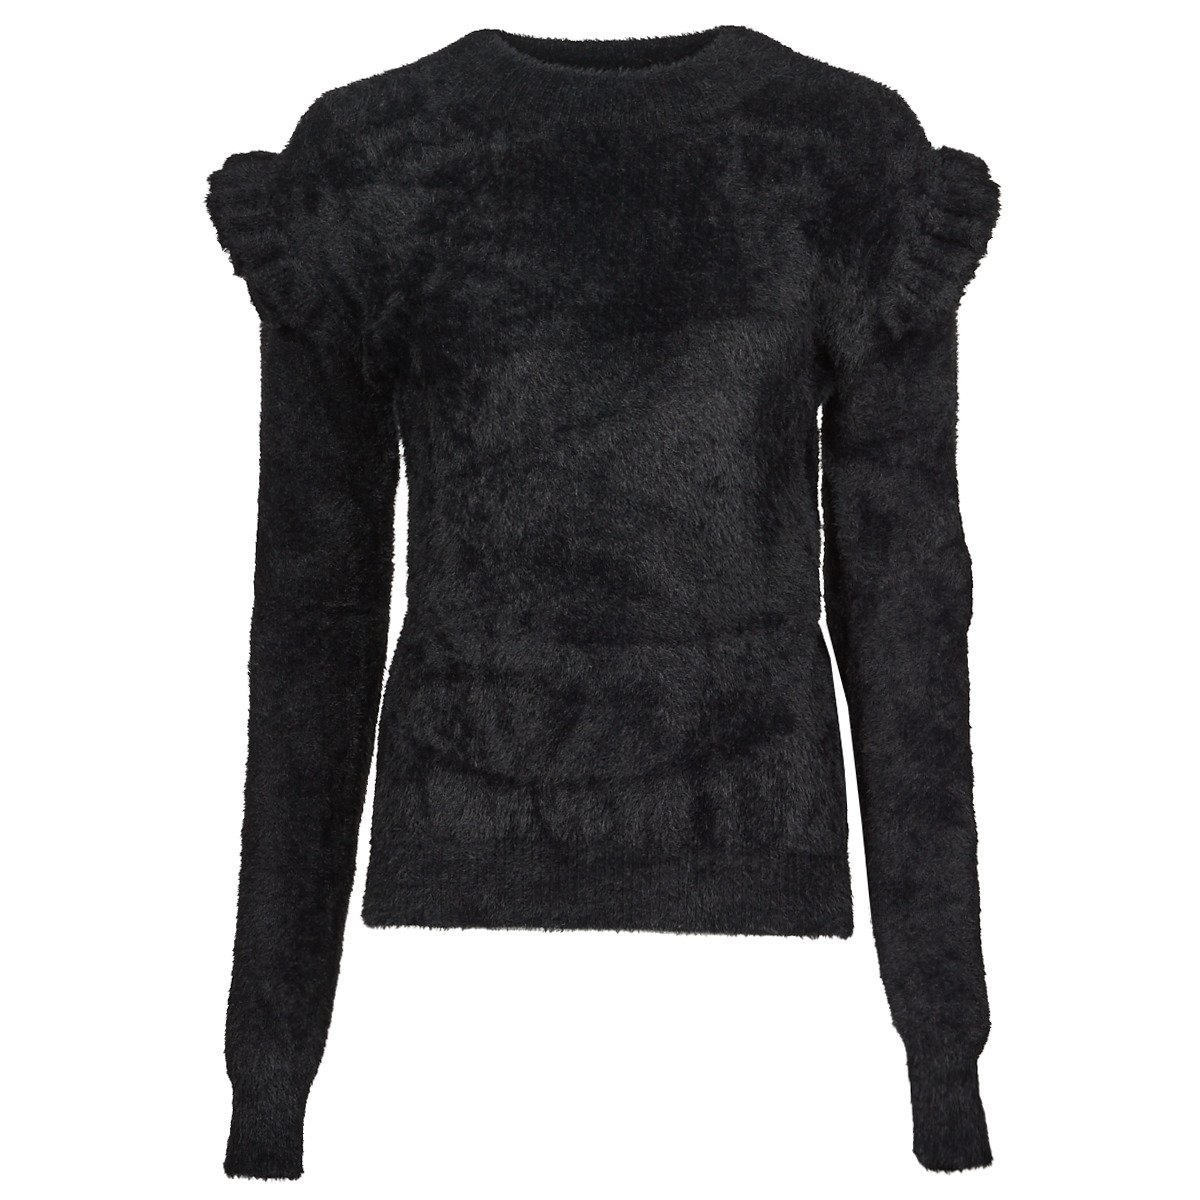 molly bracken  t1405h21  women's sweater in black